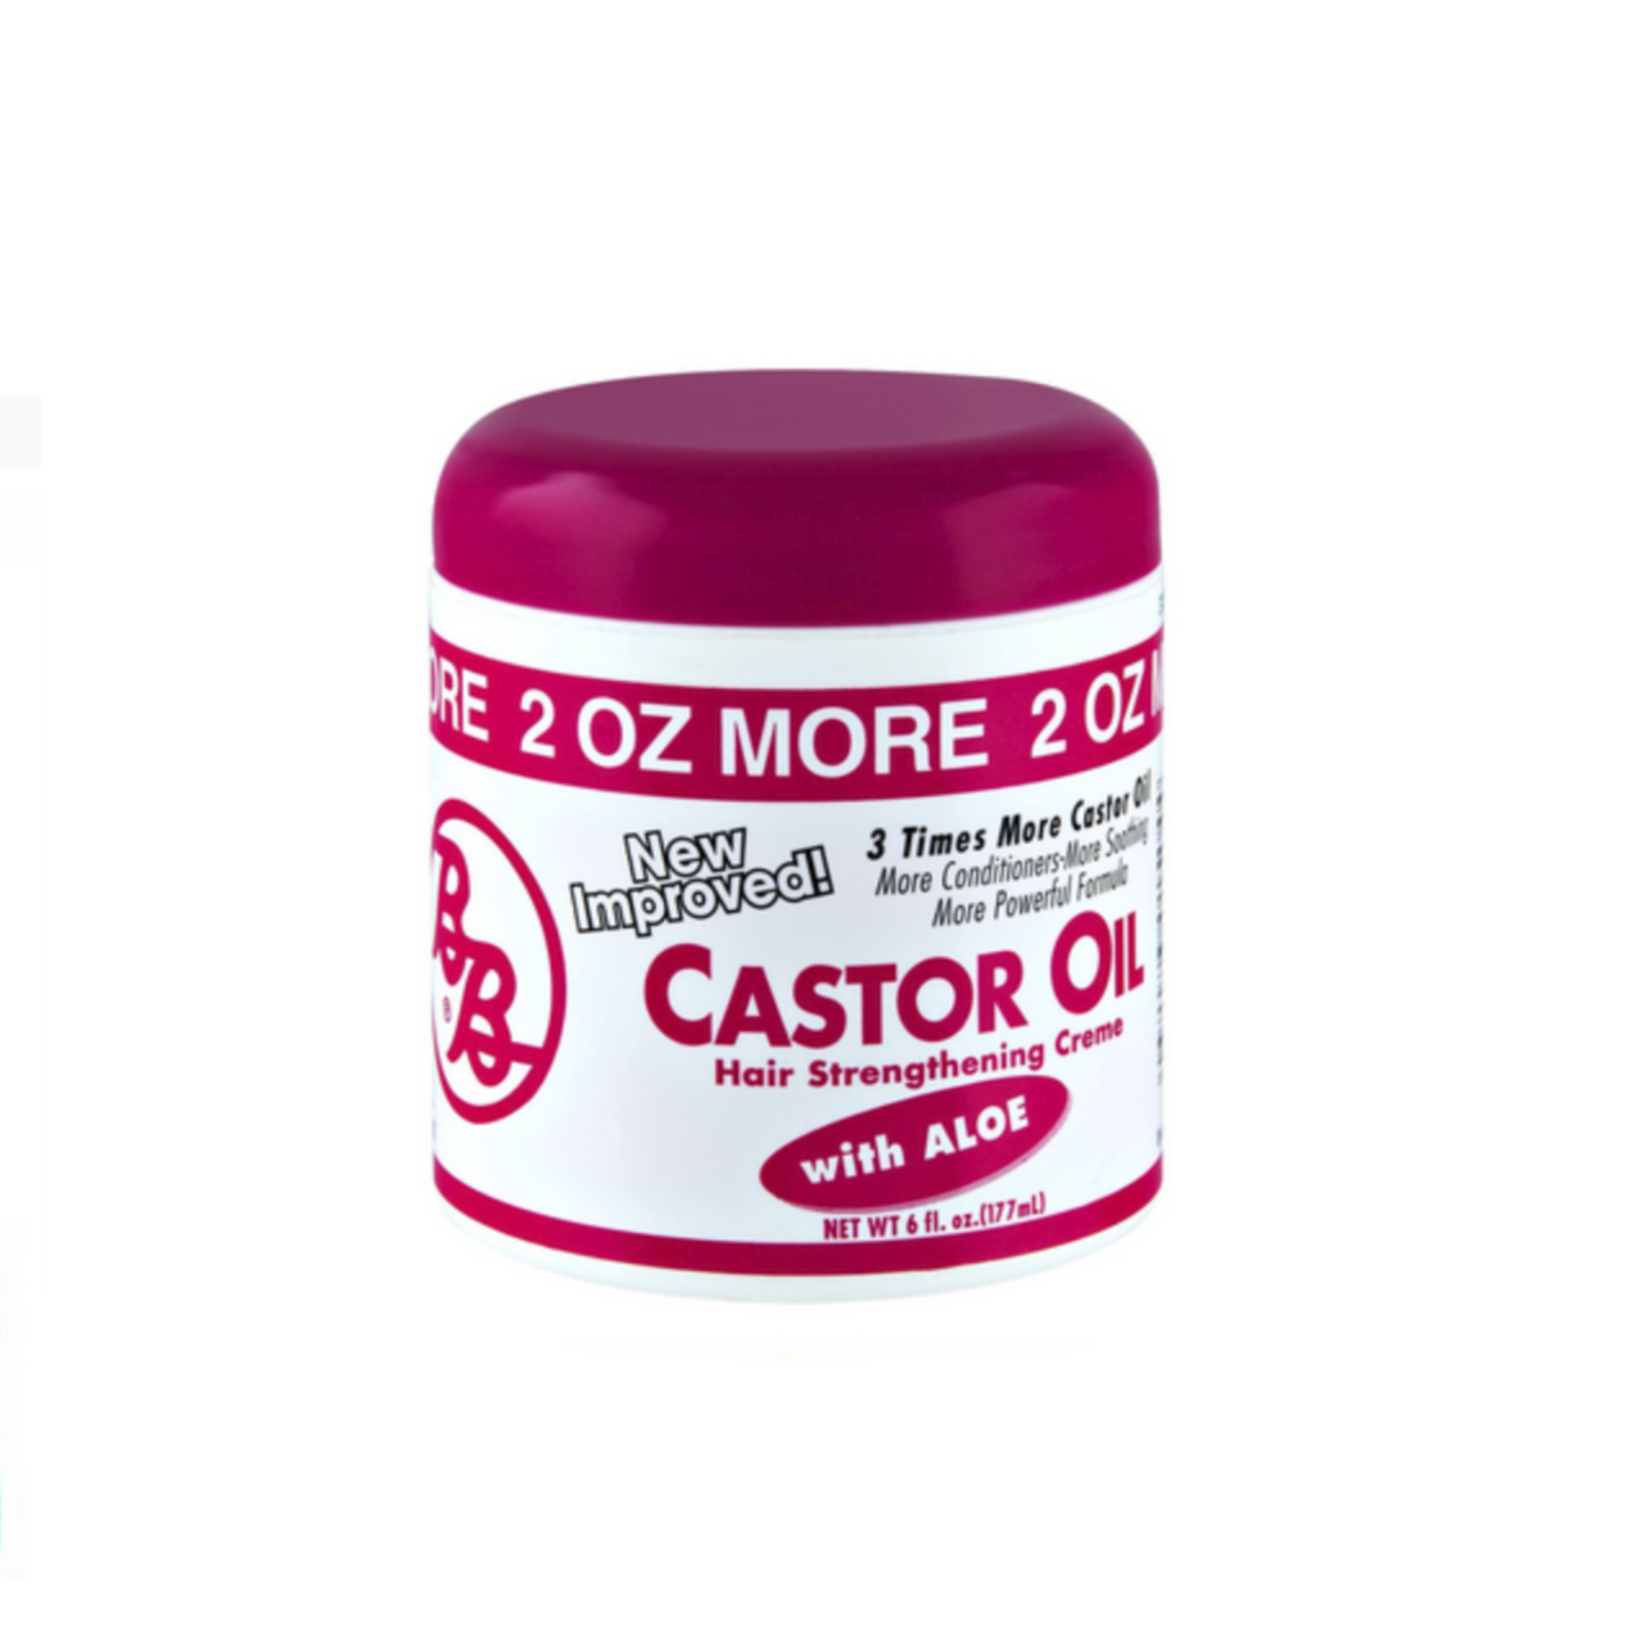 BB Castor Oil Hair Strengthening Creme 6 floz